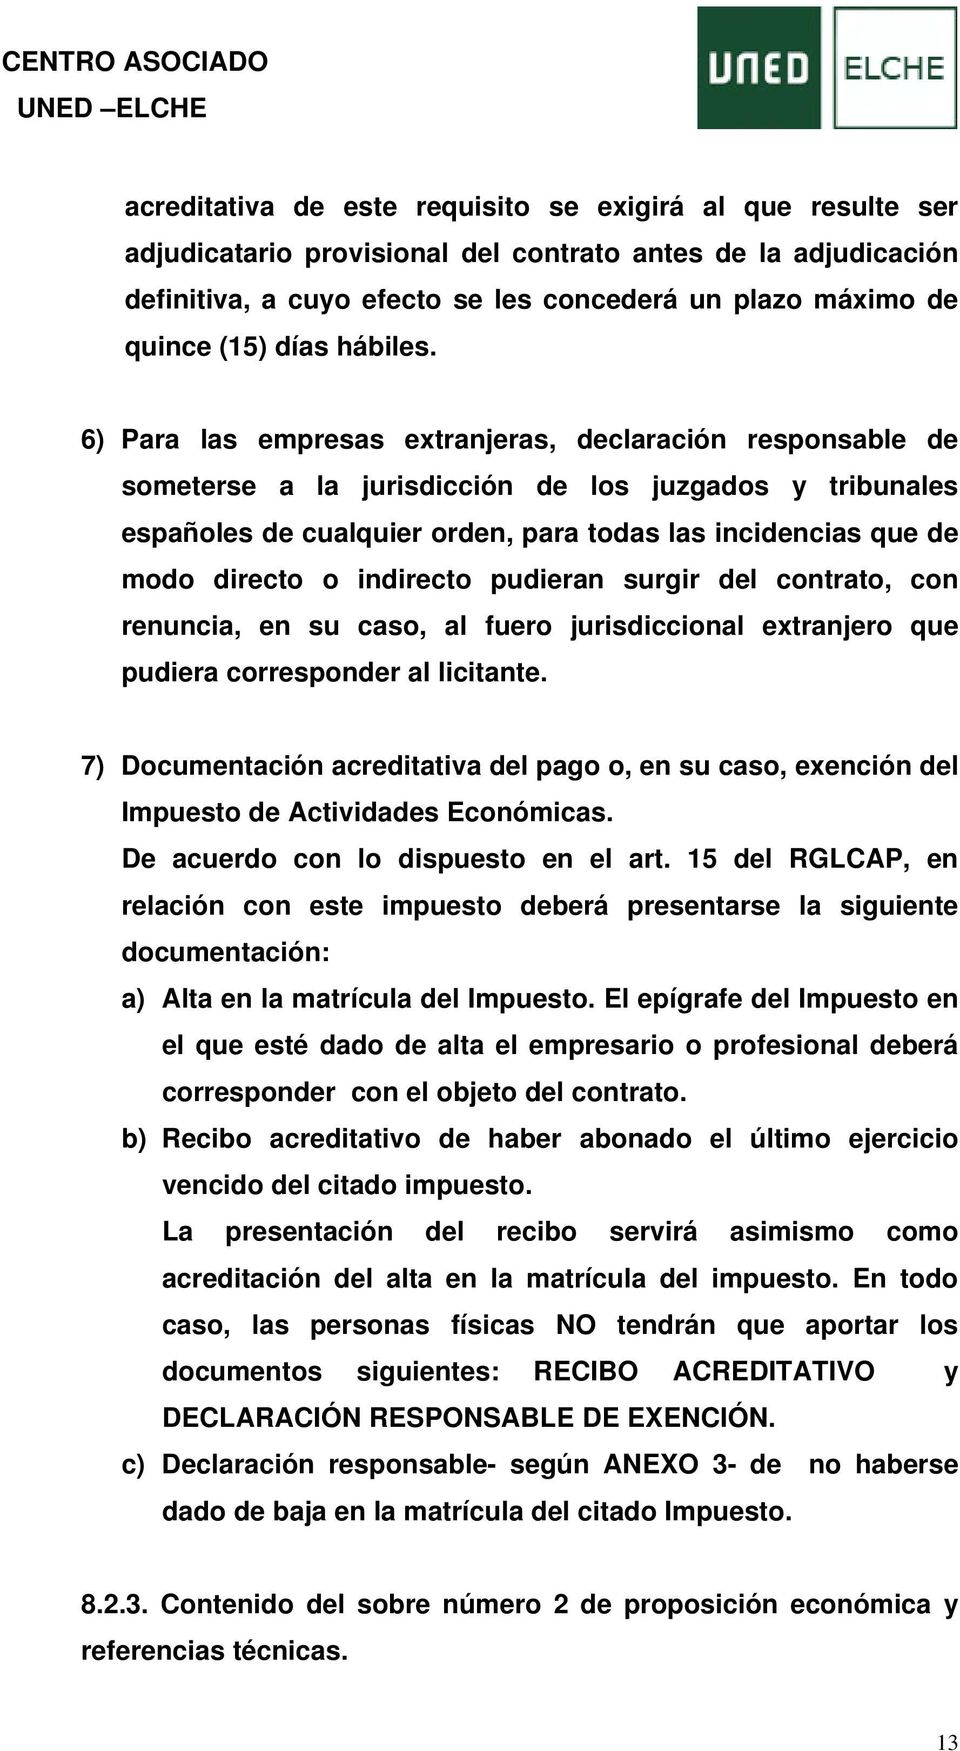 6) Para las empresas extranjeras, declaración responsable de someterse a la jurisdicción de los juzgados y tribunales españoles de cualquier orden, para todas las incidencias que de modo directo o